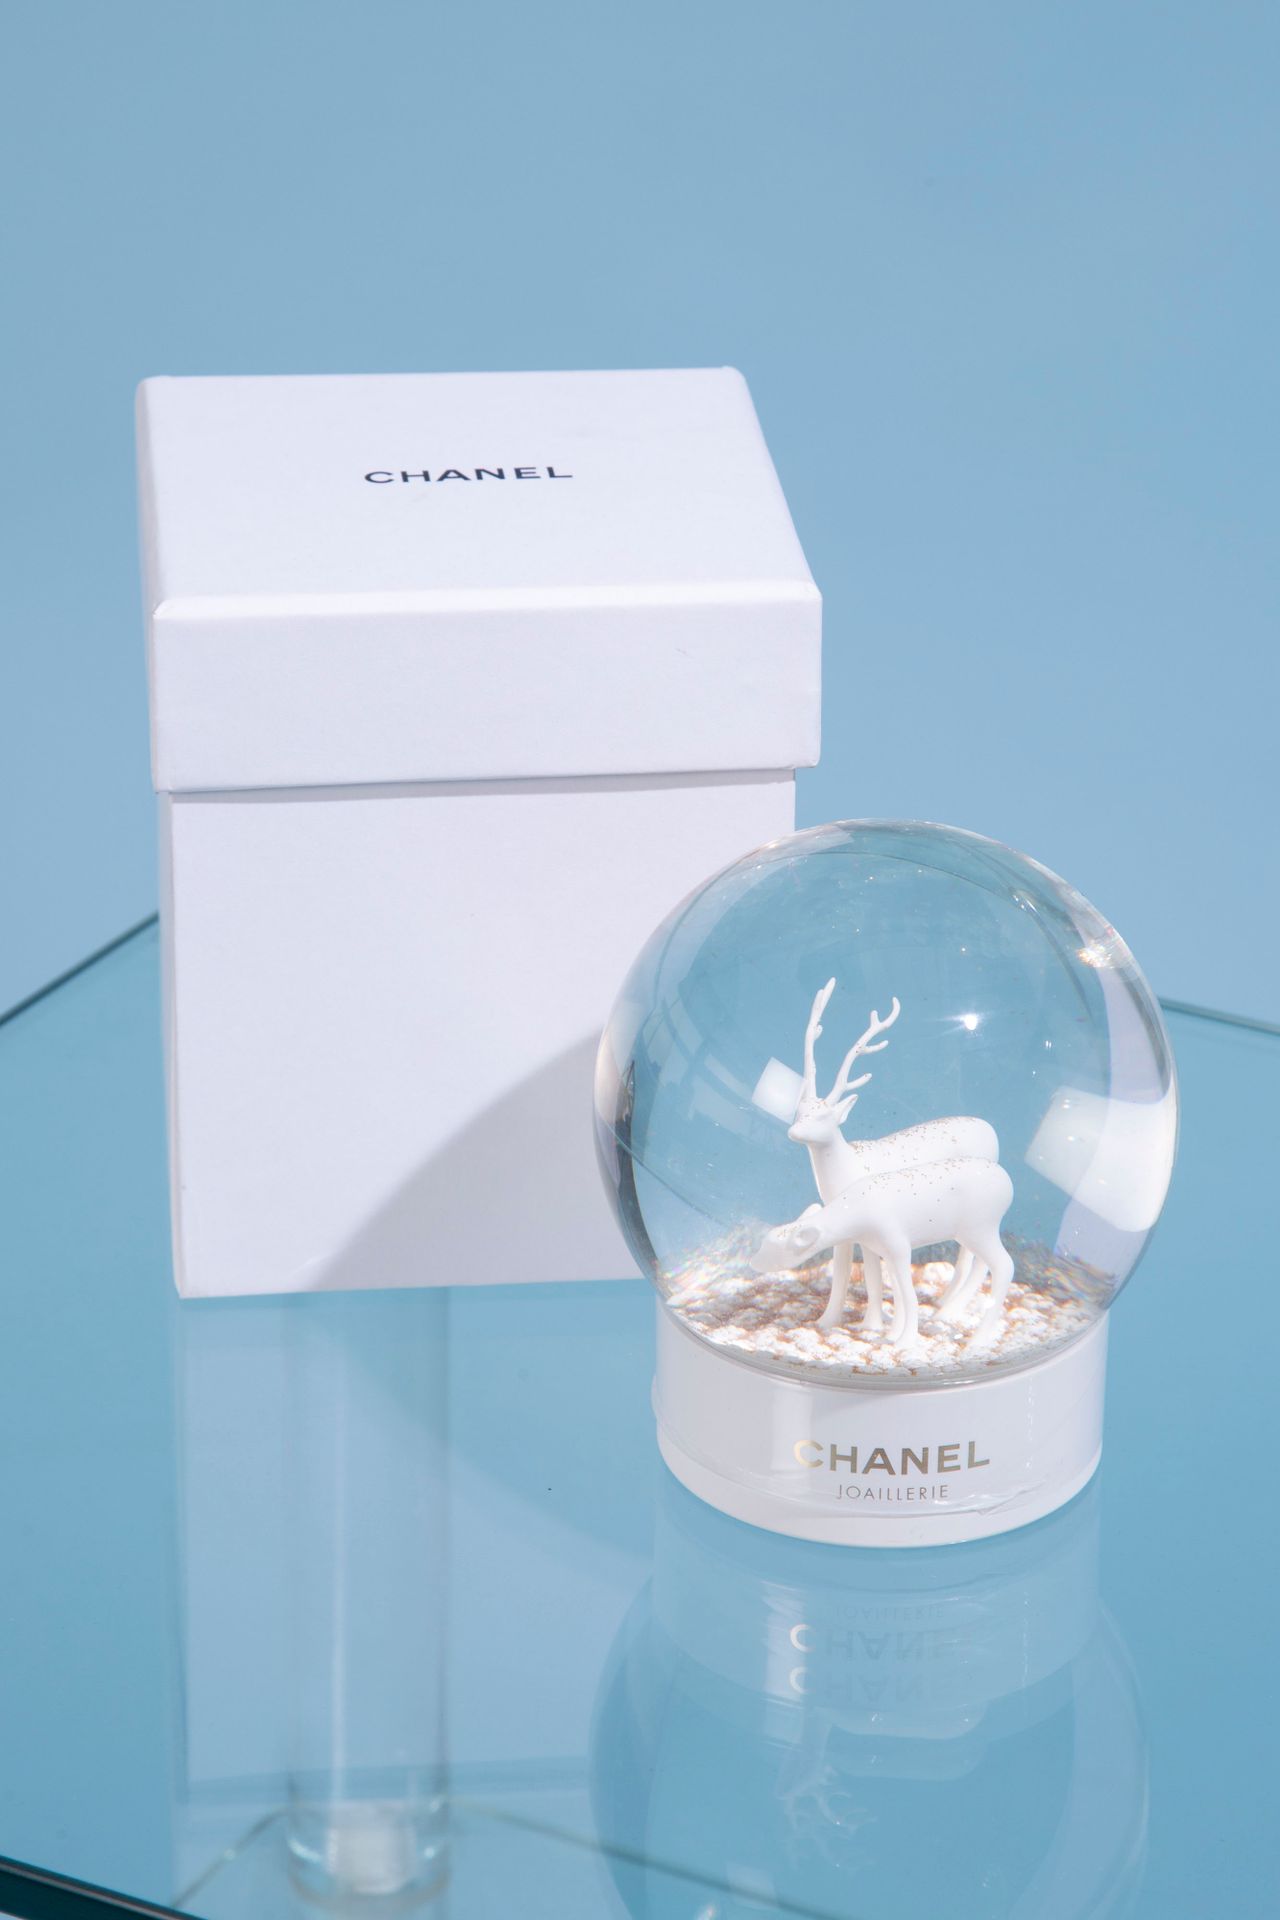 Null 香奈儿。 

玻璃雪球放在一个白色漆面塑料底座上，有一只鹿和一只母鹿。 

高度：12厘米。高度：12厘米 

伴随着它的盒子。